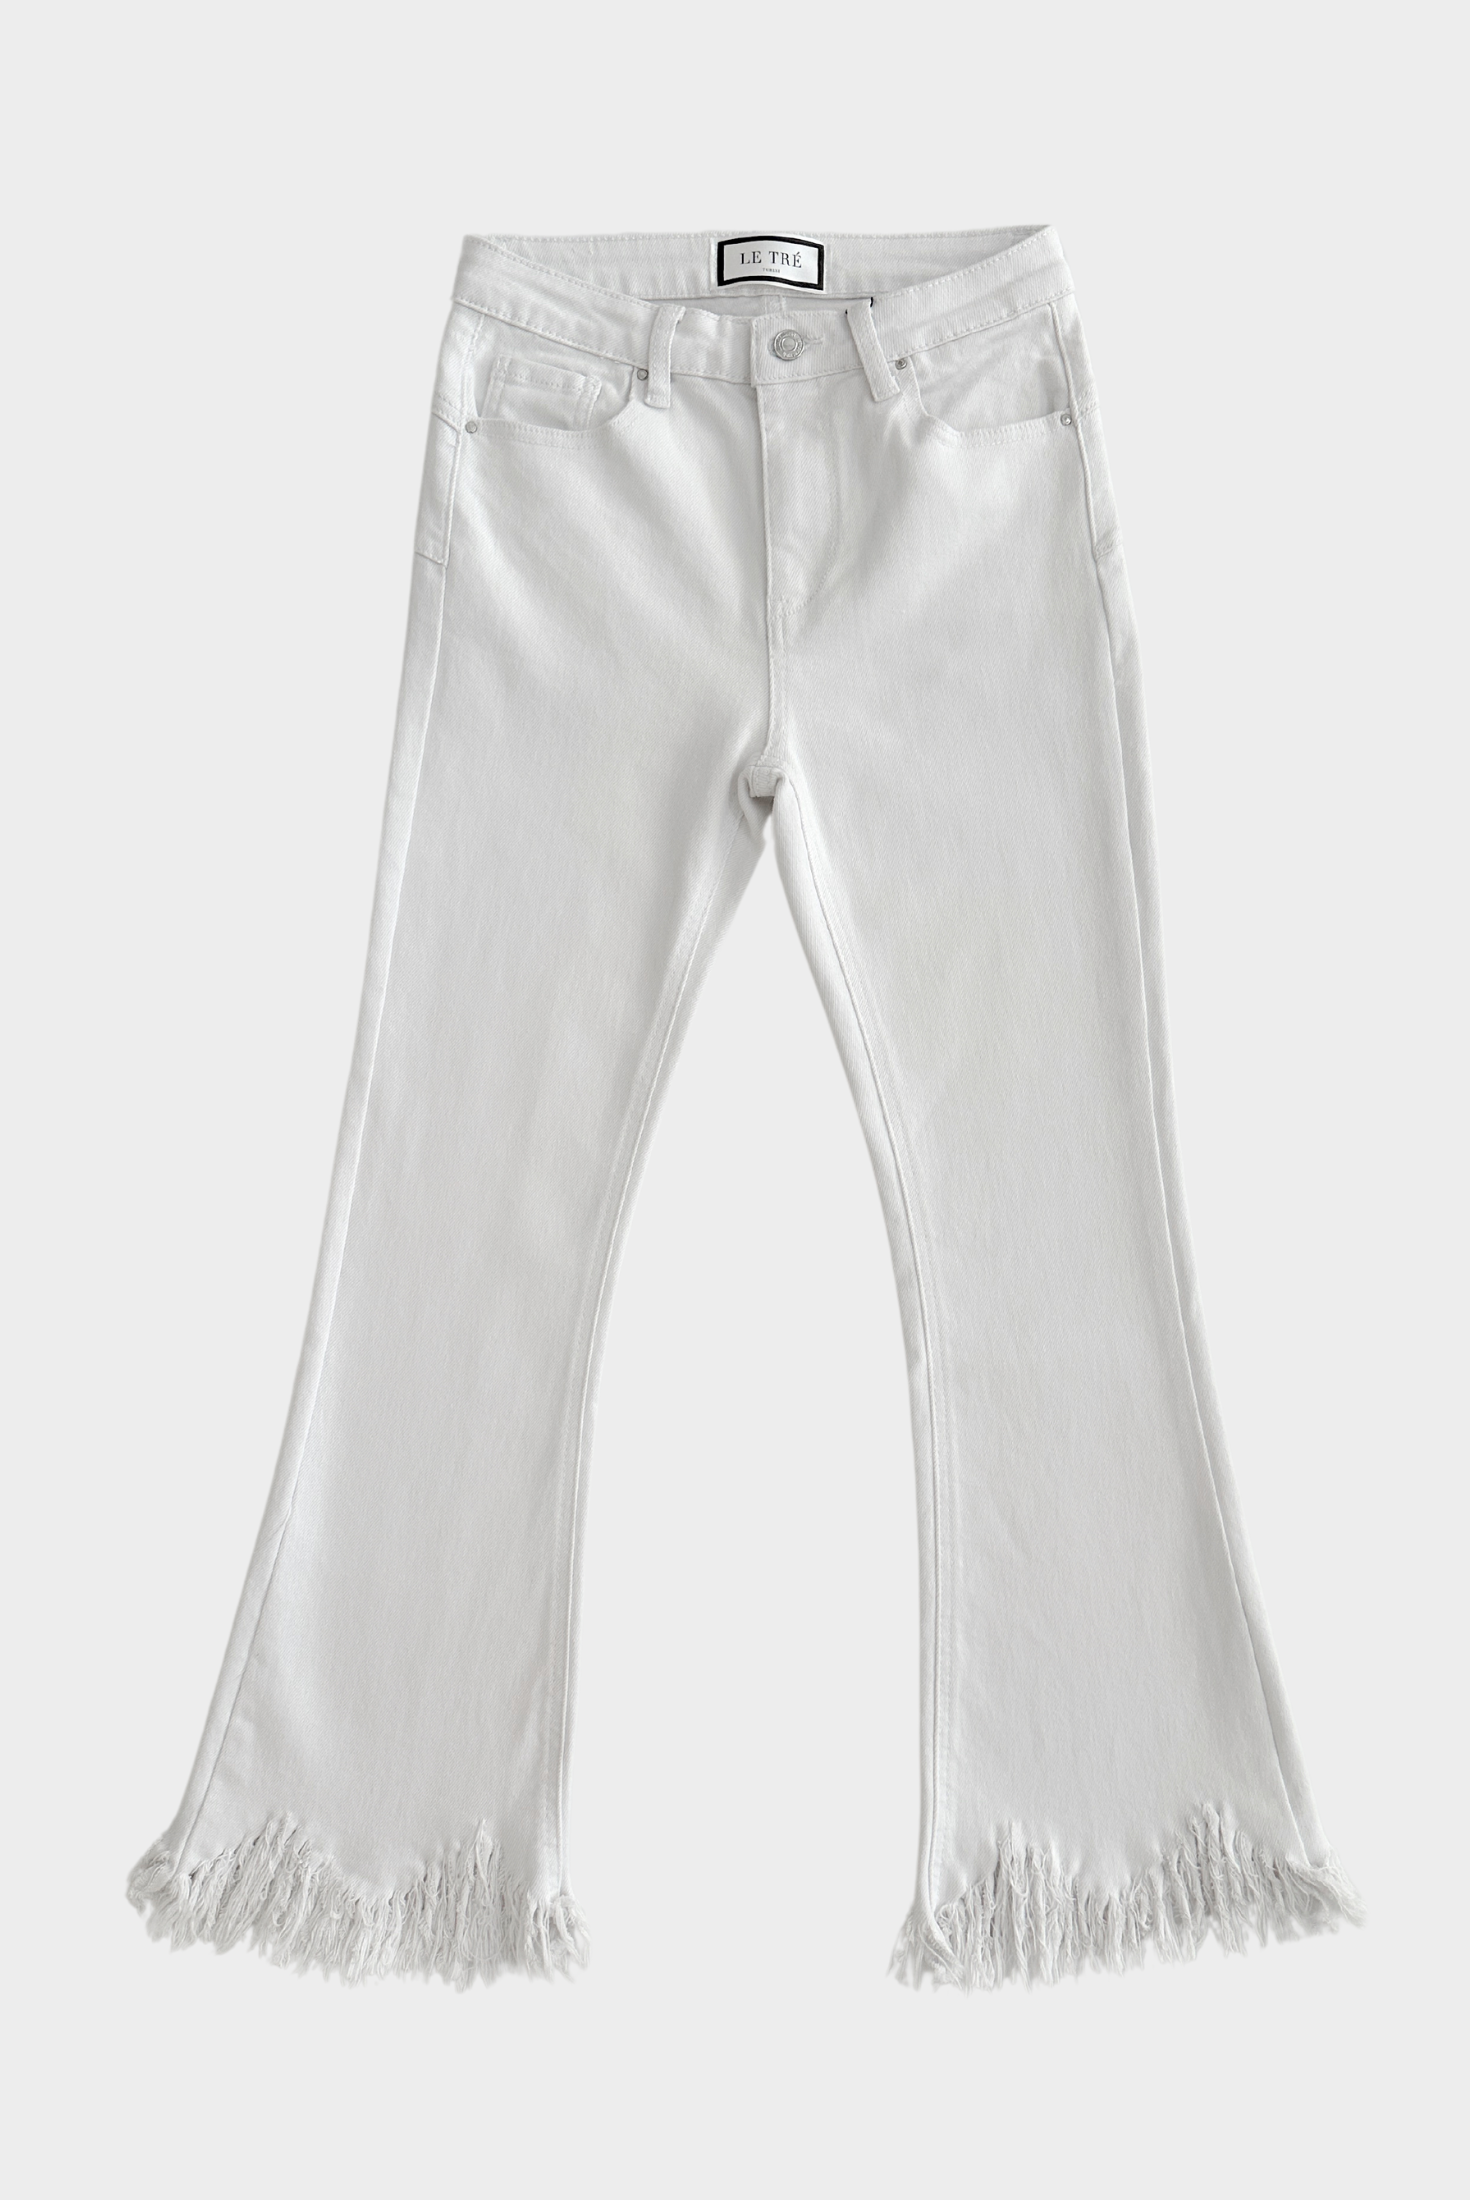 ג'ינס לבן עם סיומת גזורה